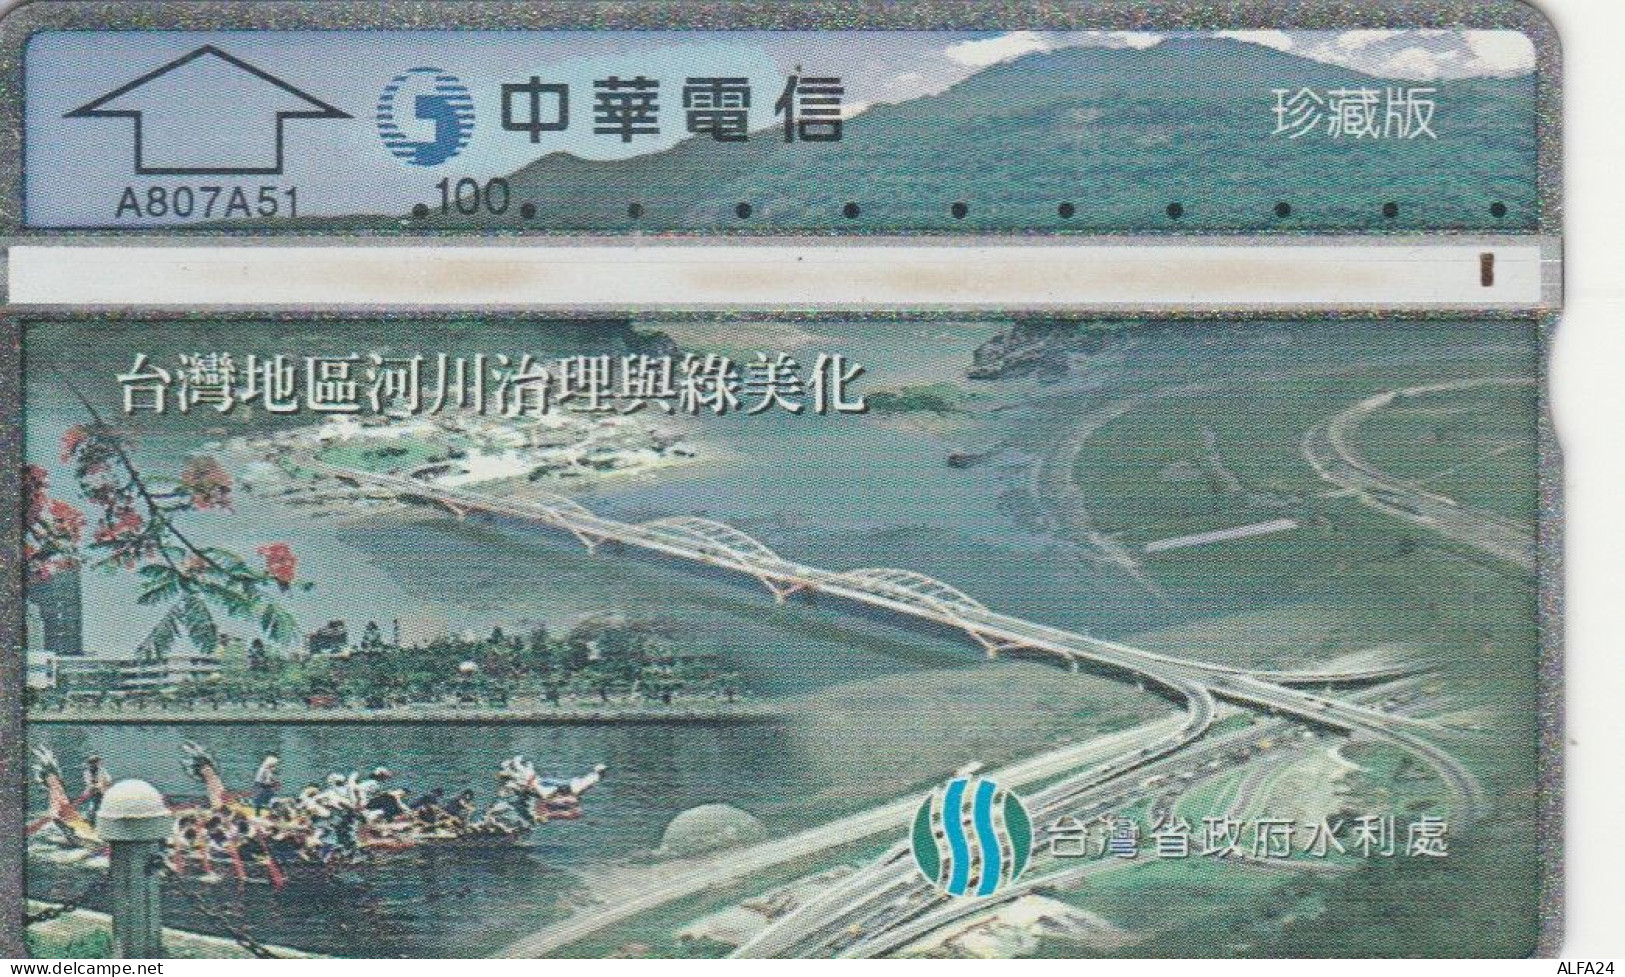 PHONE CARD TAIWAN  (E108.49.5 - Taiwan (Formose)